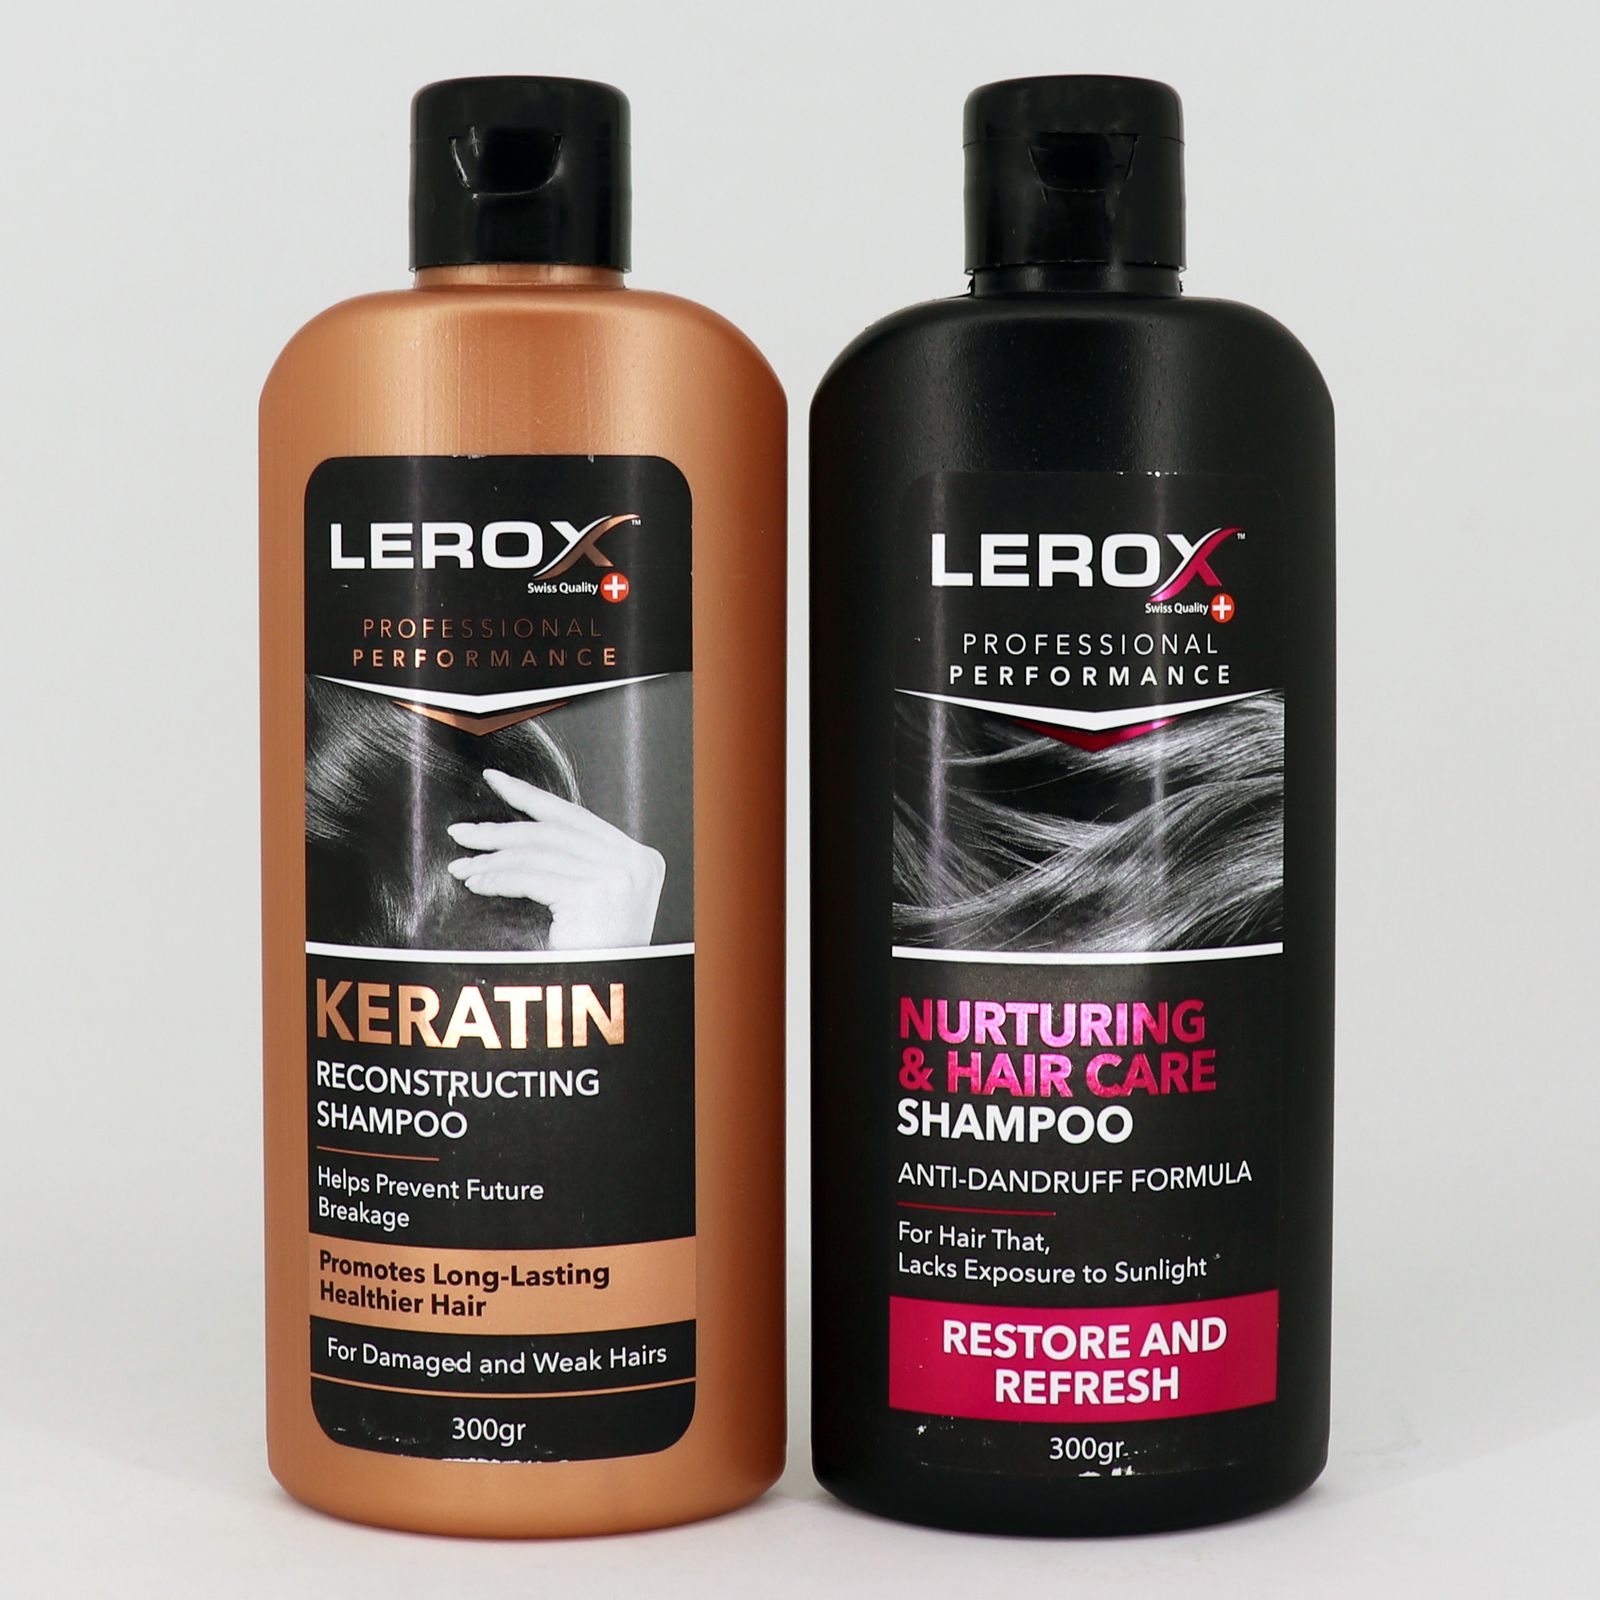 شامپو مو لروکس مدل Keratin حجم 300 میلی لیتر به همراه شامپو مو لروکس مدل Nurturing & Hair Care حجم 300 میلی لیتر -  - 2